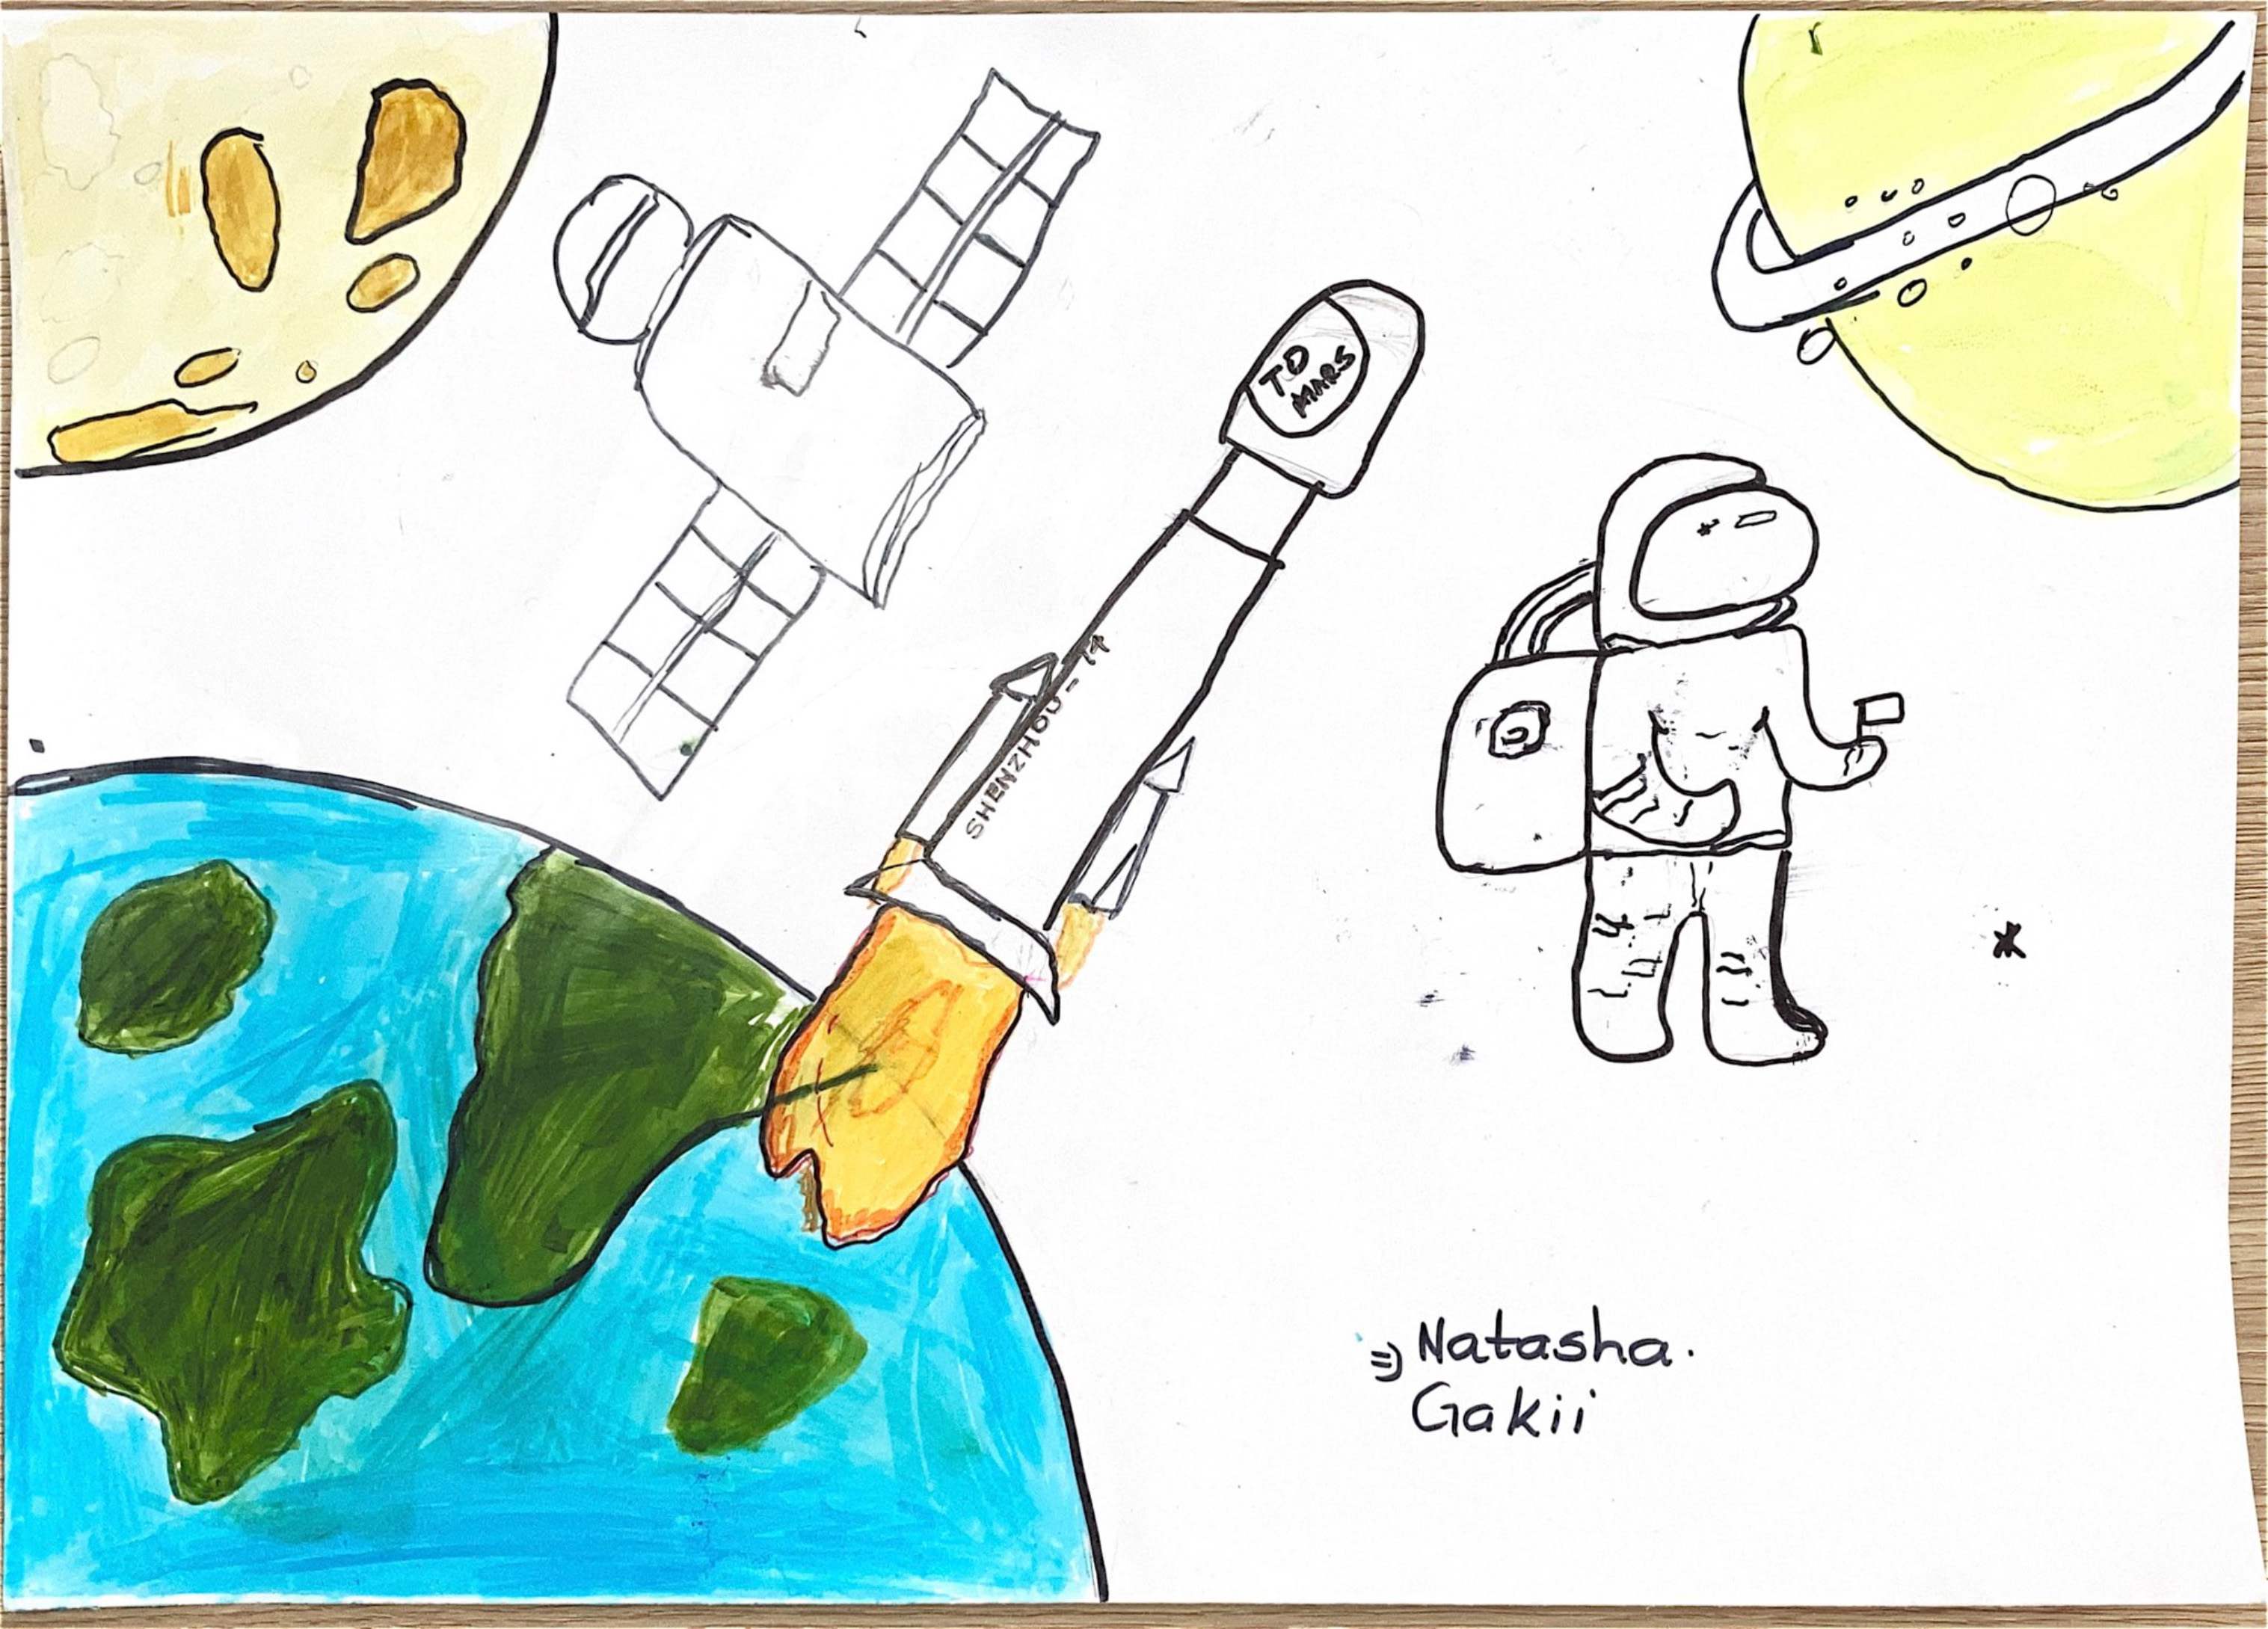 航天日绘画作品《太空，我来啦！》,肯尼亚娜塔莎·加奇（Natasha Gakii）